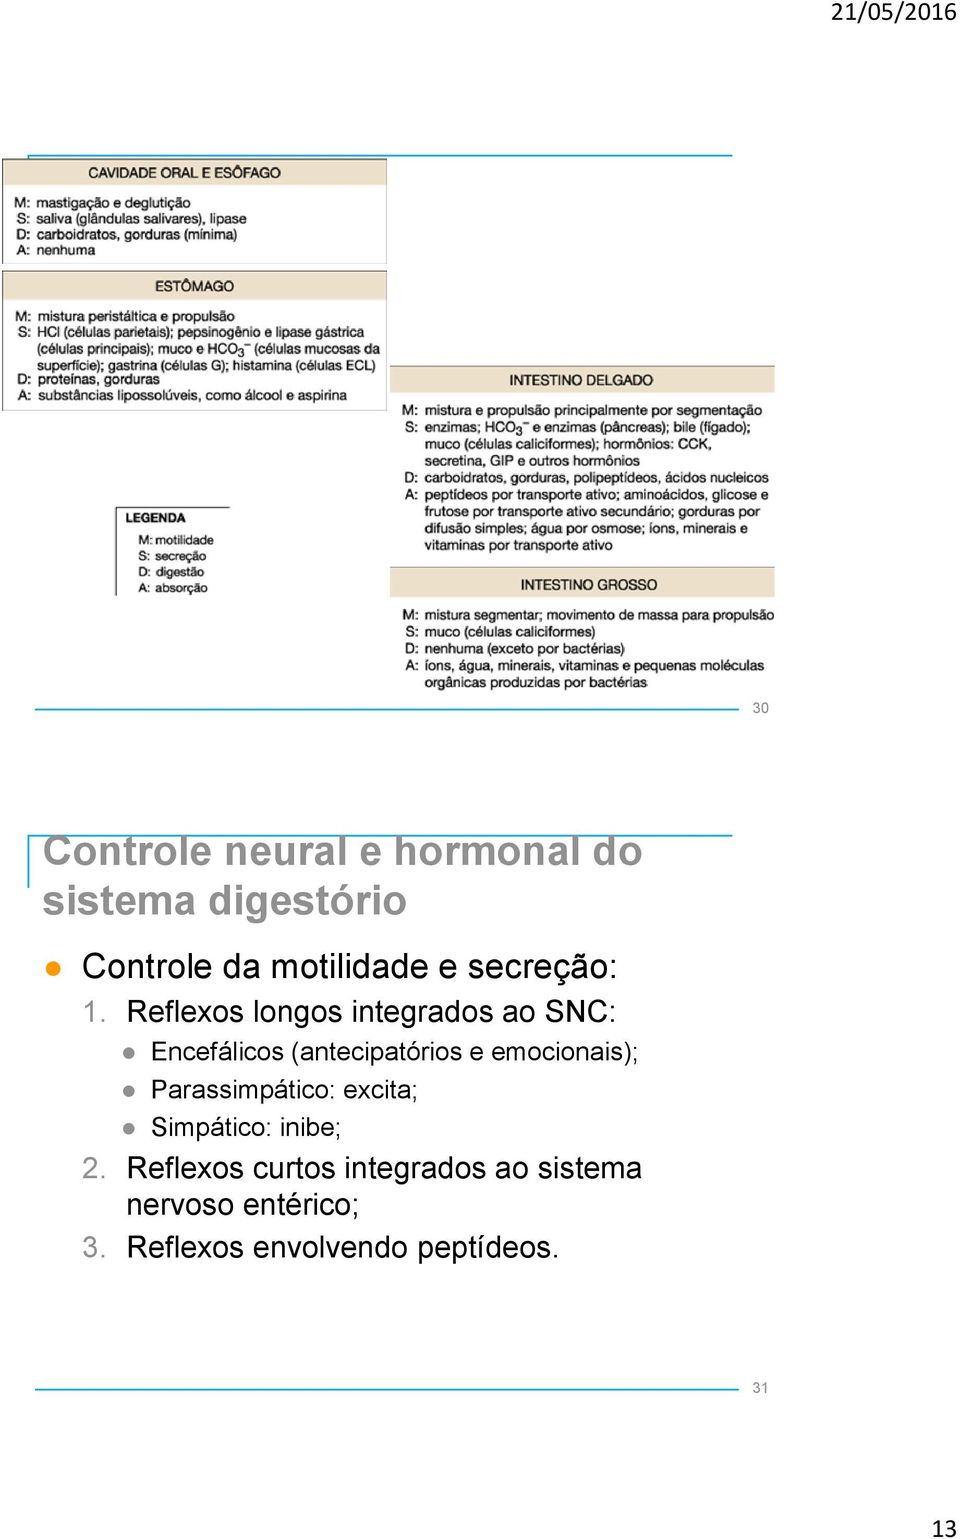 Reflexos longos integrados ao SNC: Encefálicos (antecipatórios e